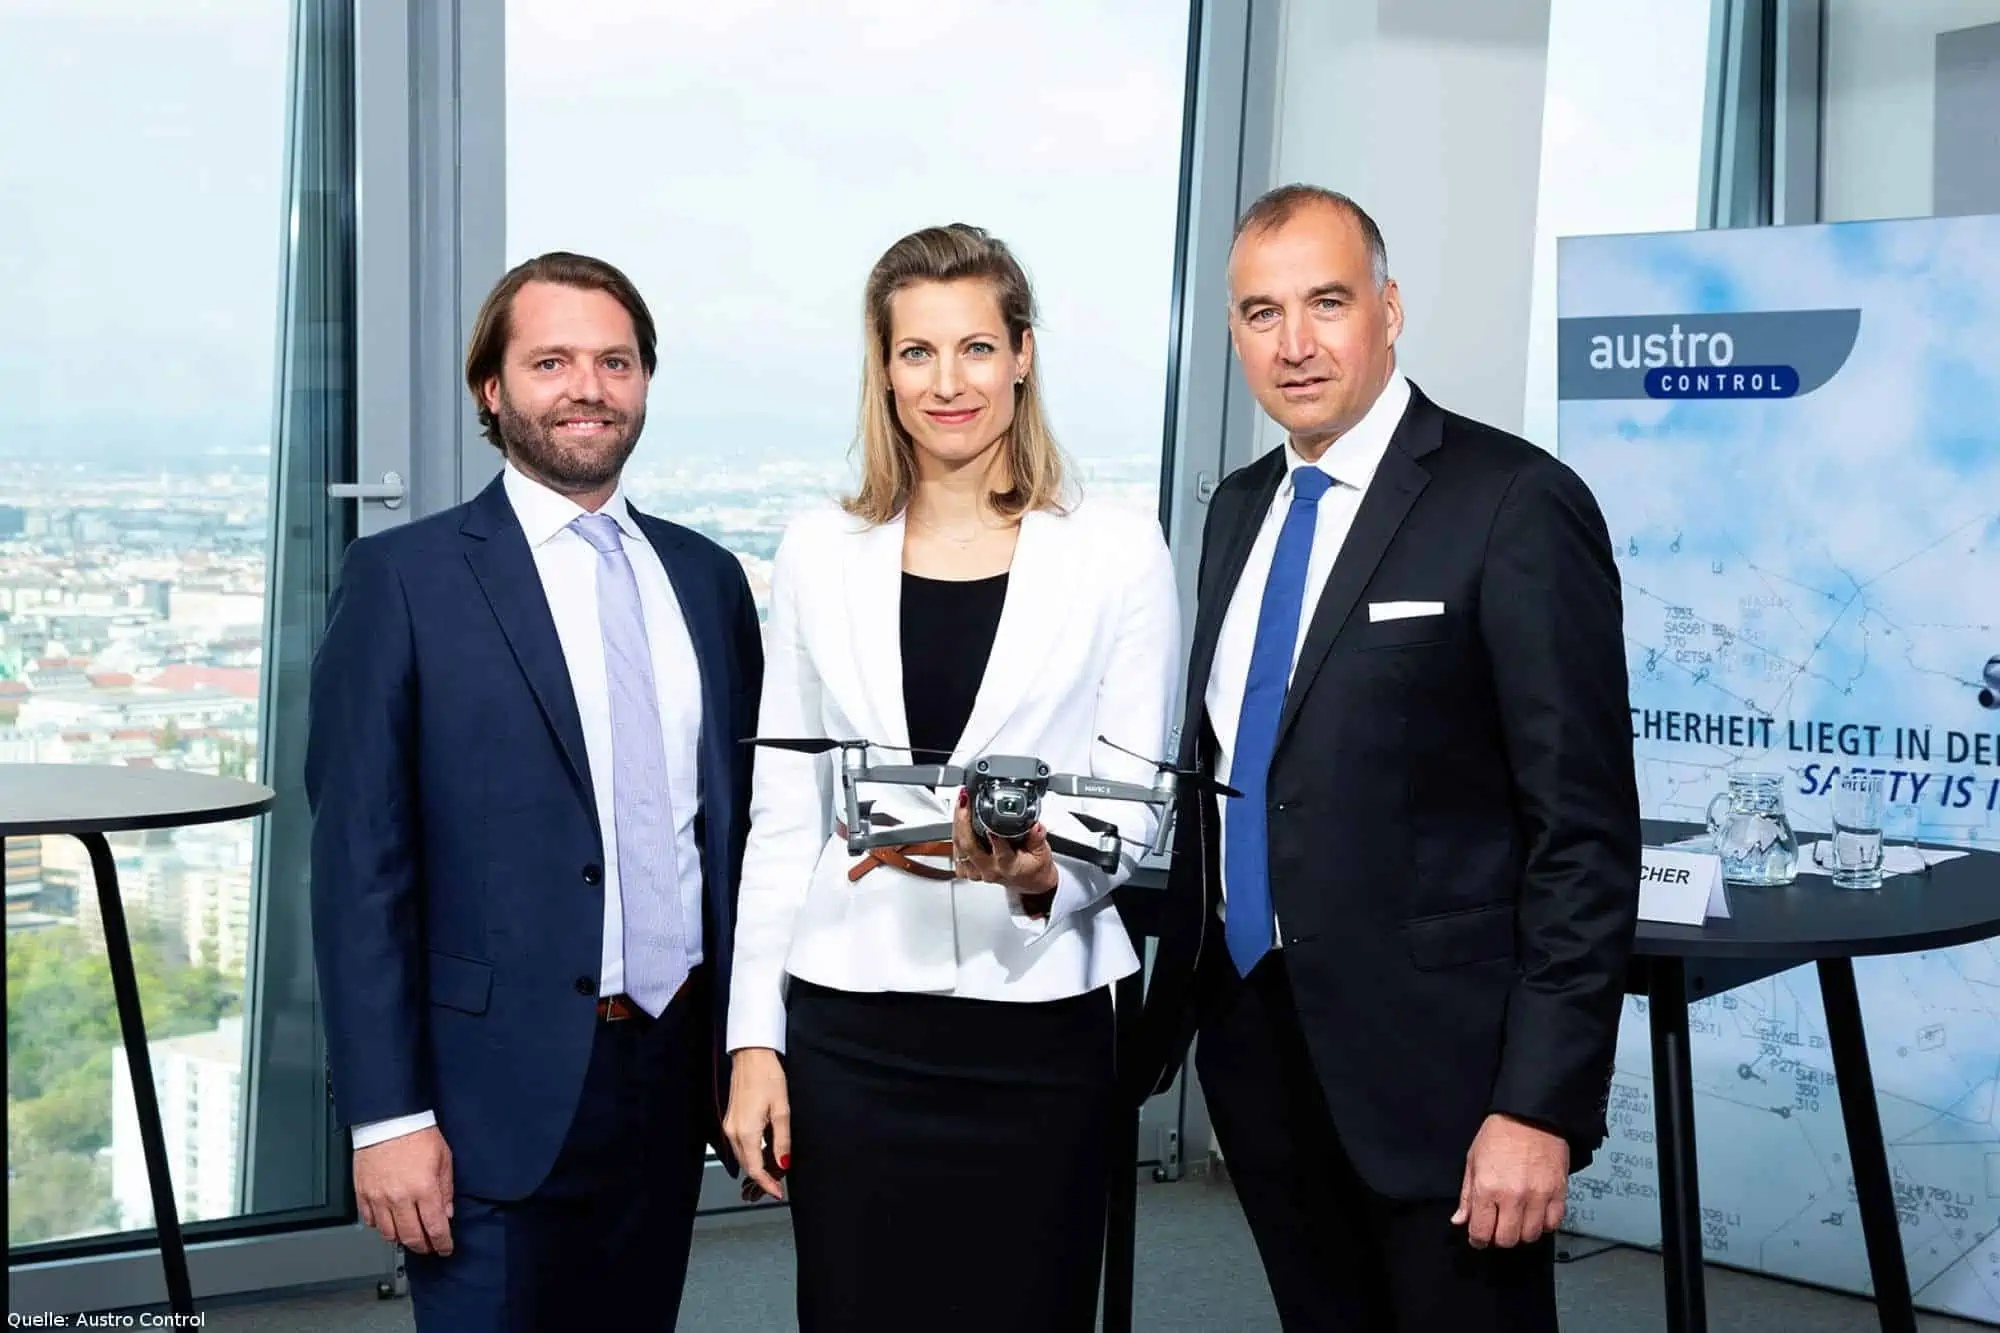 Austro Control und Frequentis entwickeln eine Zusammenarbeit weiter, und starten den Aufbau einer Verkehrsmanagement-Lösung zur sicheren Integration von Drohnen in den österreichischen Luftraum.